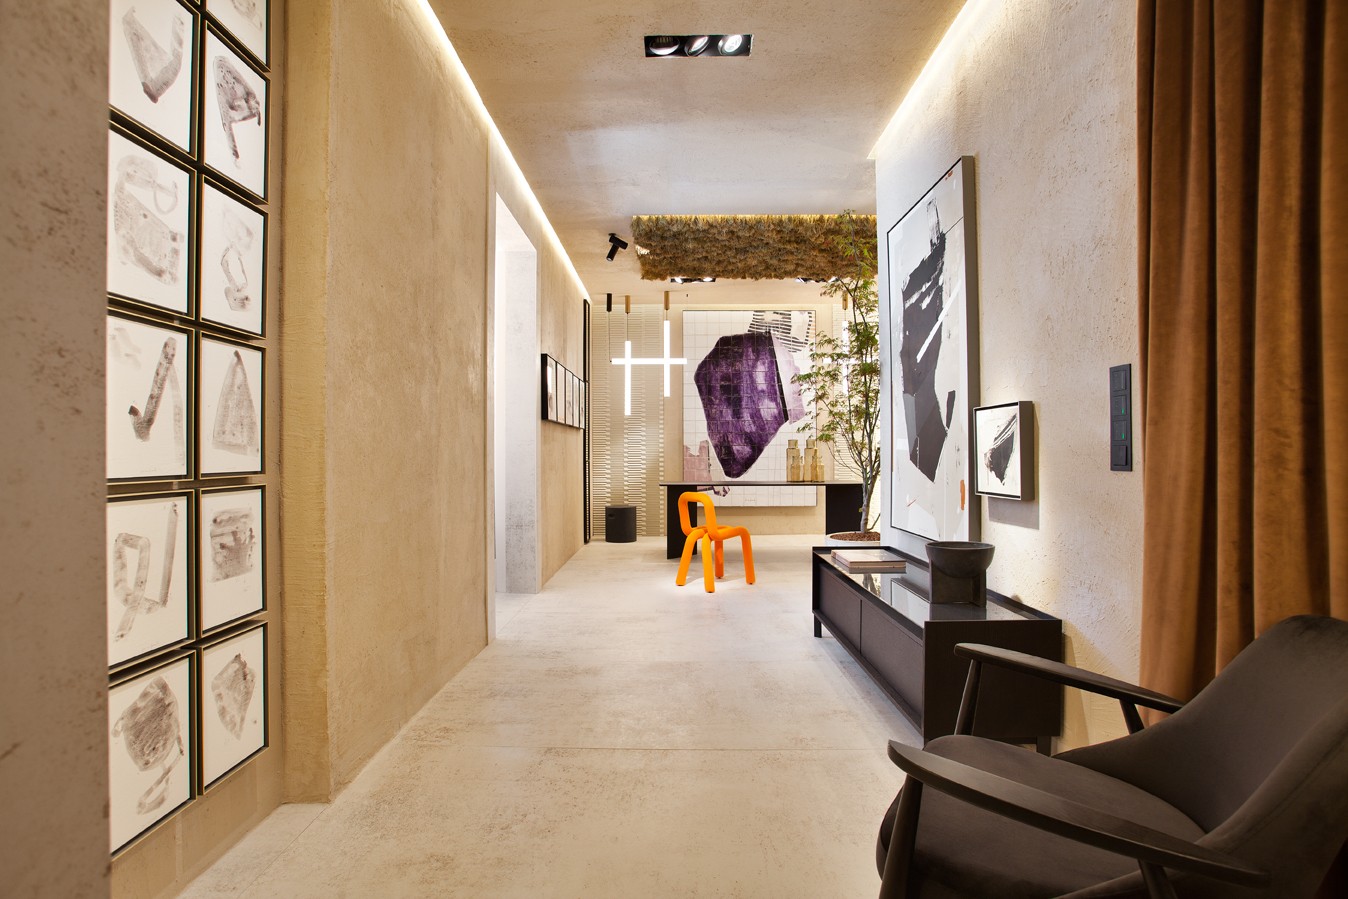 Image of casa decor 2022 espacio jaime jurado y monica bartolessis cafe de artista 01 in A contemporary public toilet design inspired by Roman public baths - Cosentino